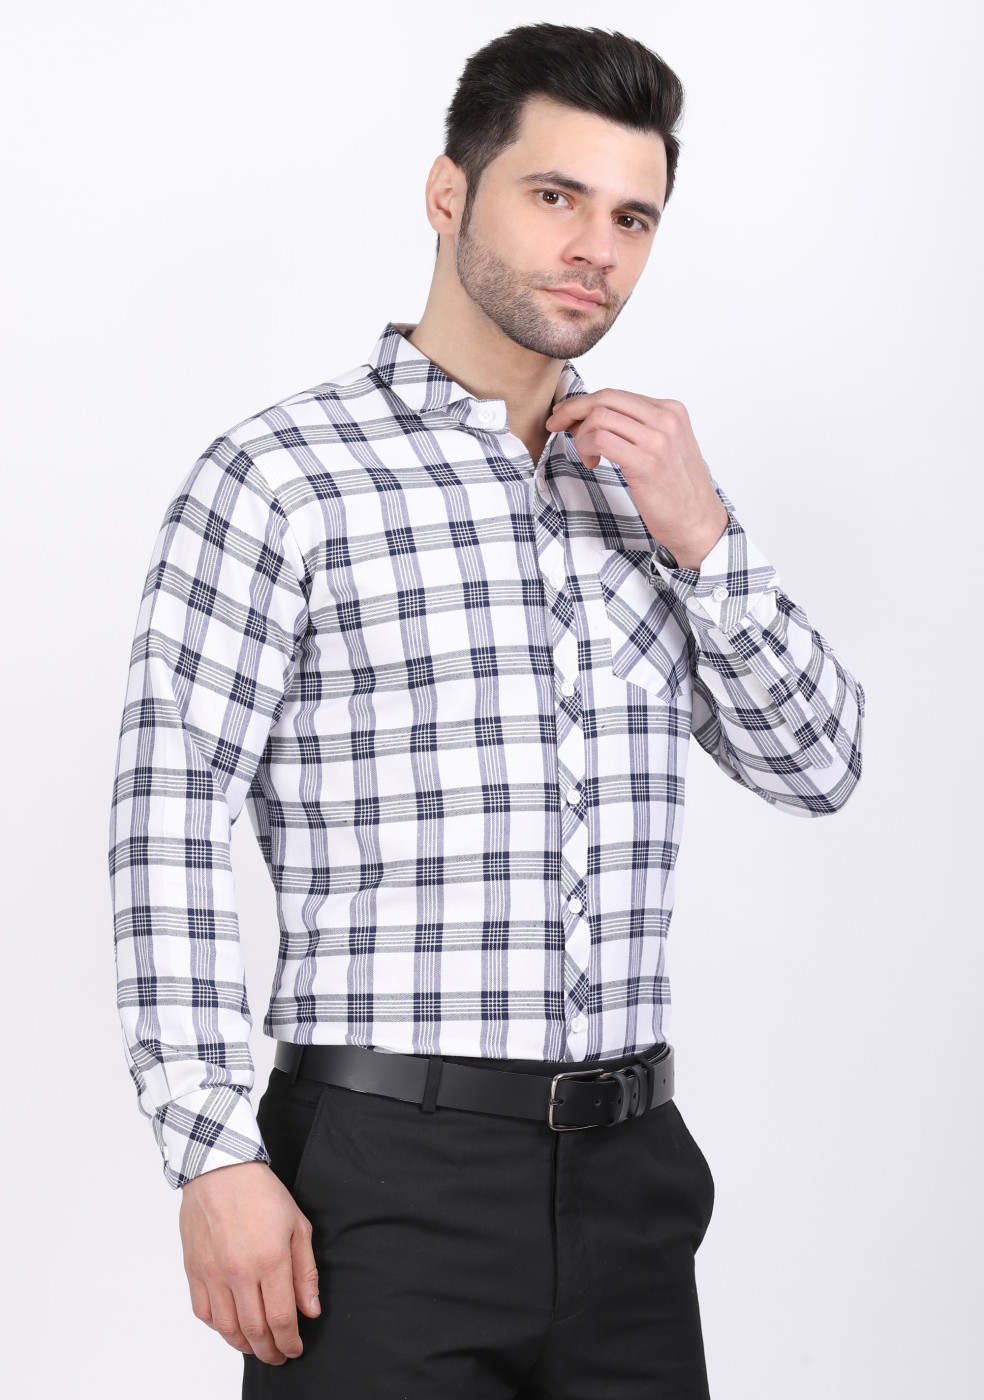 ASHTOM White & Gray Check Shirt For Men